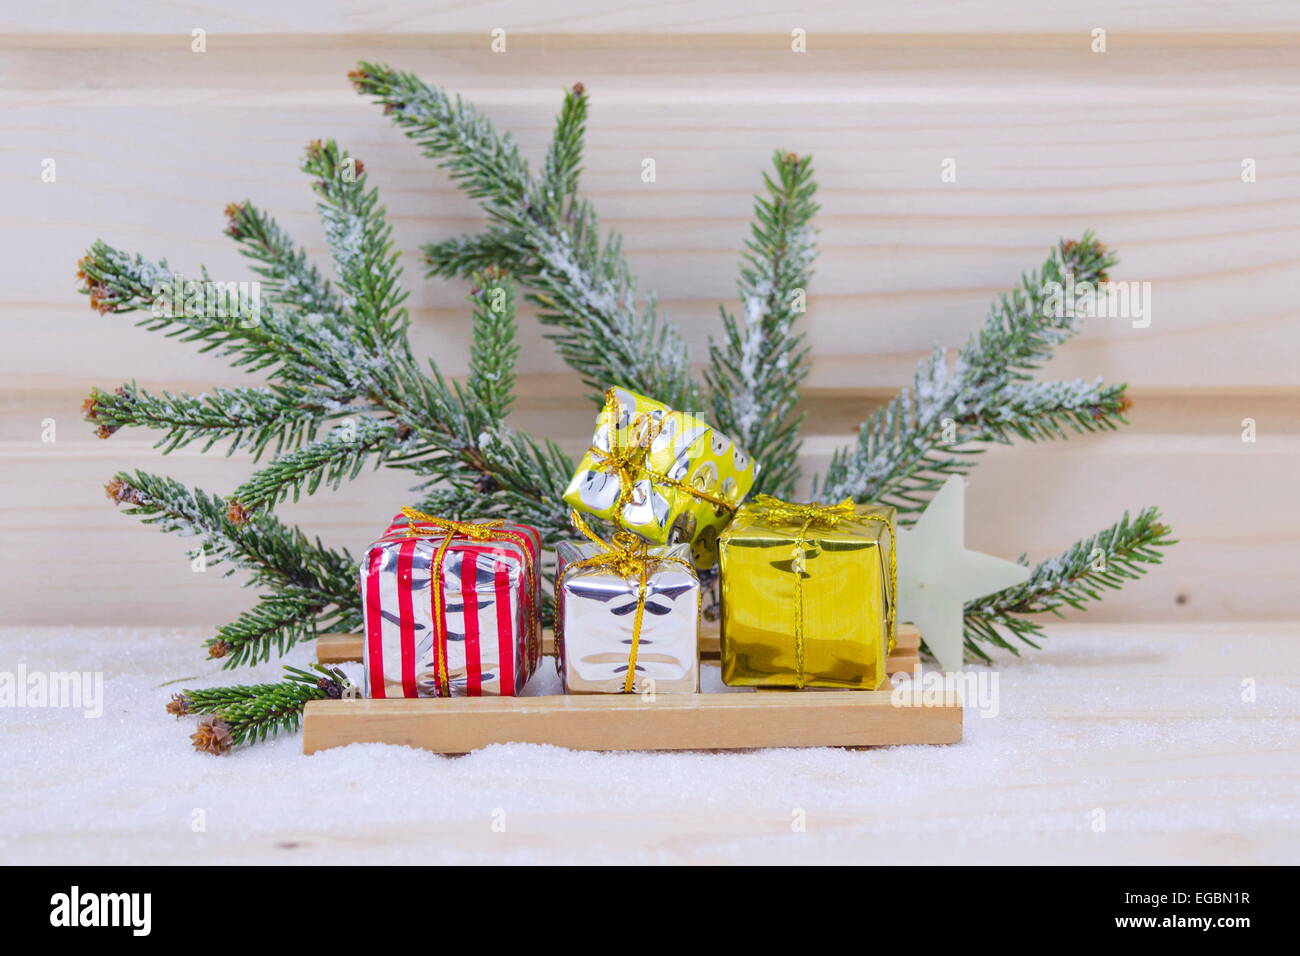 Weihnachtsgeschenke auf einem Schlitten mit einer Tanne-Niederlassung im Hintergrund auf einer Holzfläche mit Schnee bedeckt Stockfoto